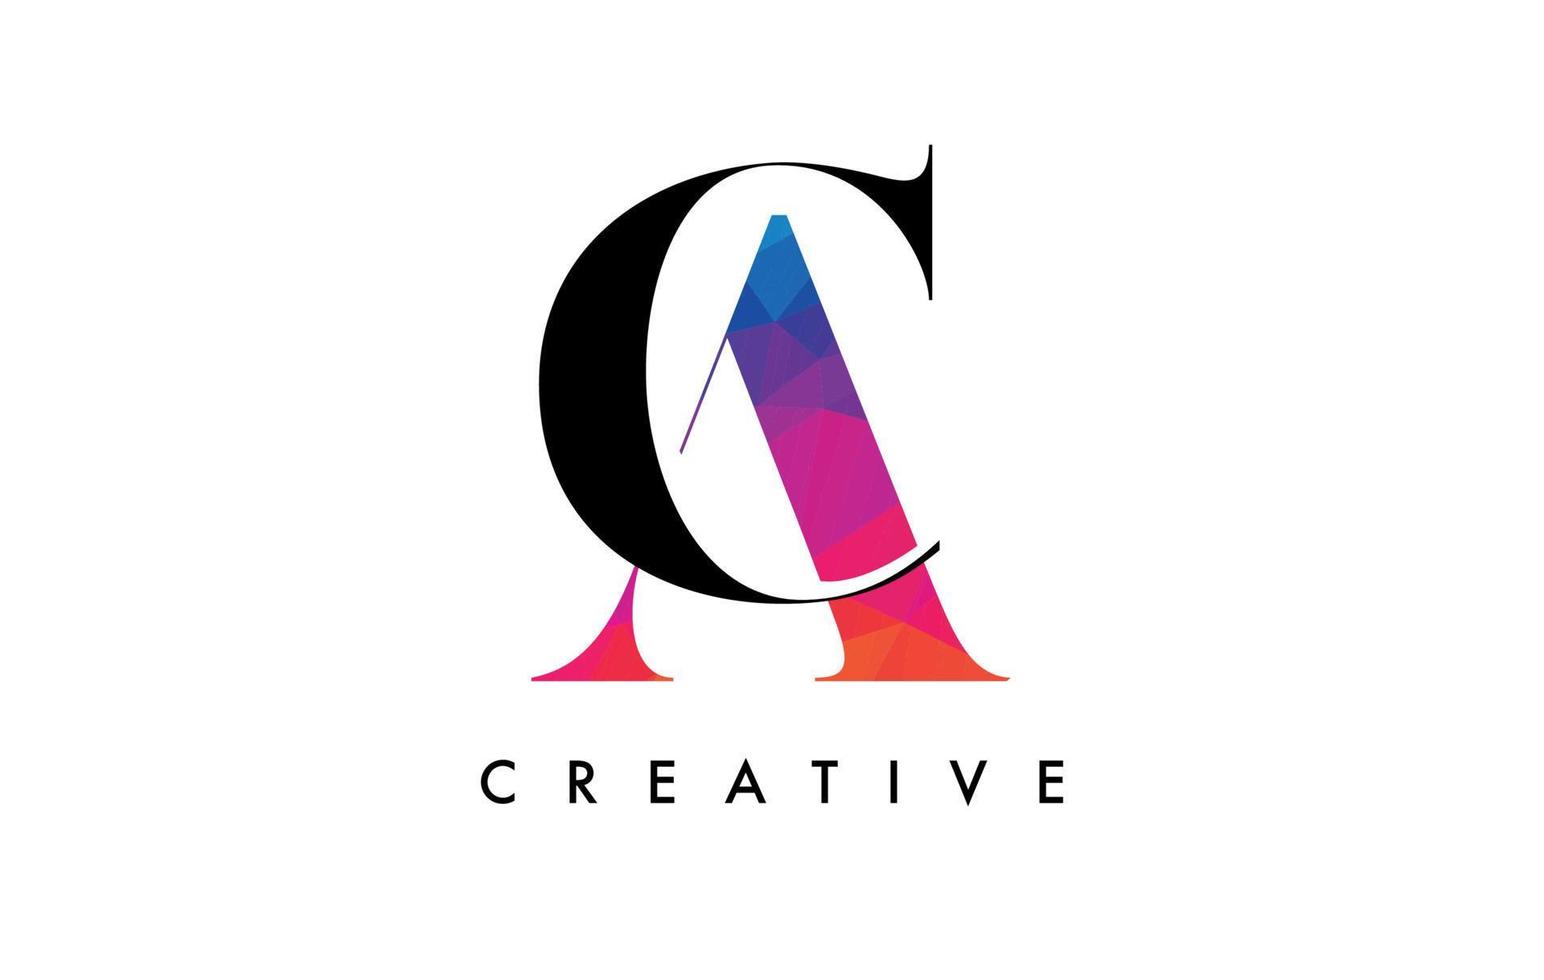 diseño de letras ca con corte creativo y textura colorida del arco iris vector